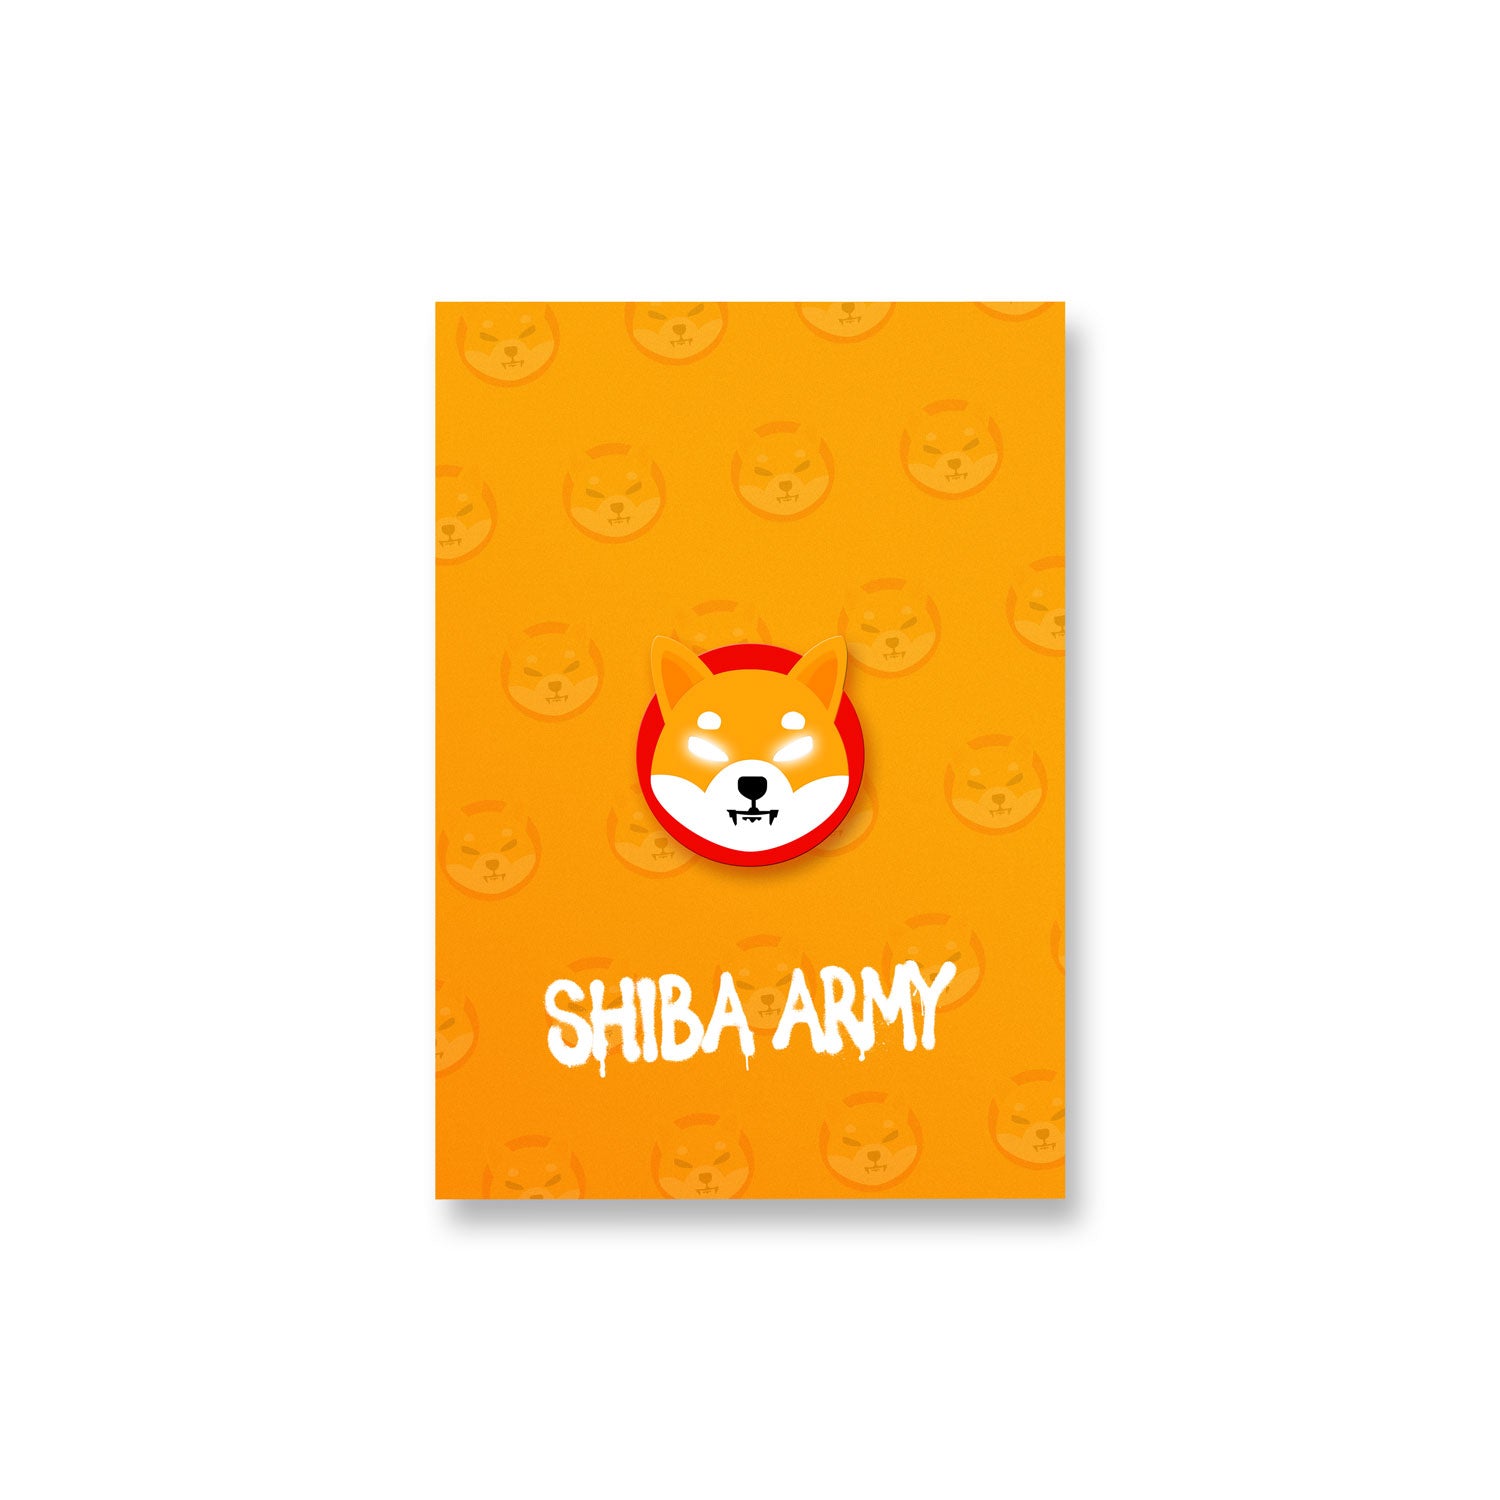 shiba inu token meme coin logo poster shiba army art